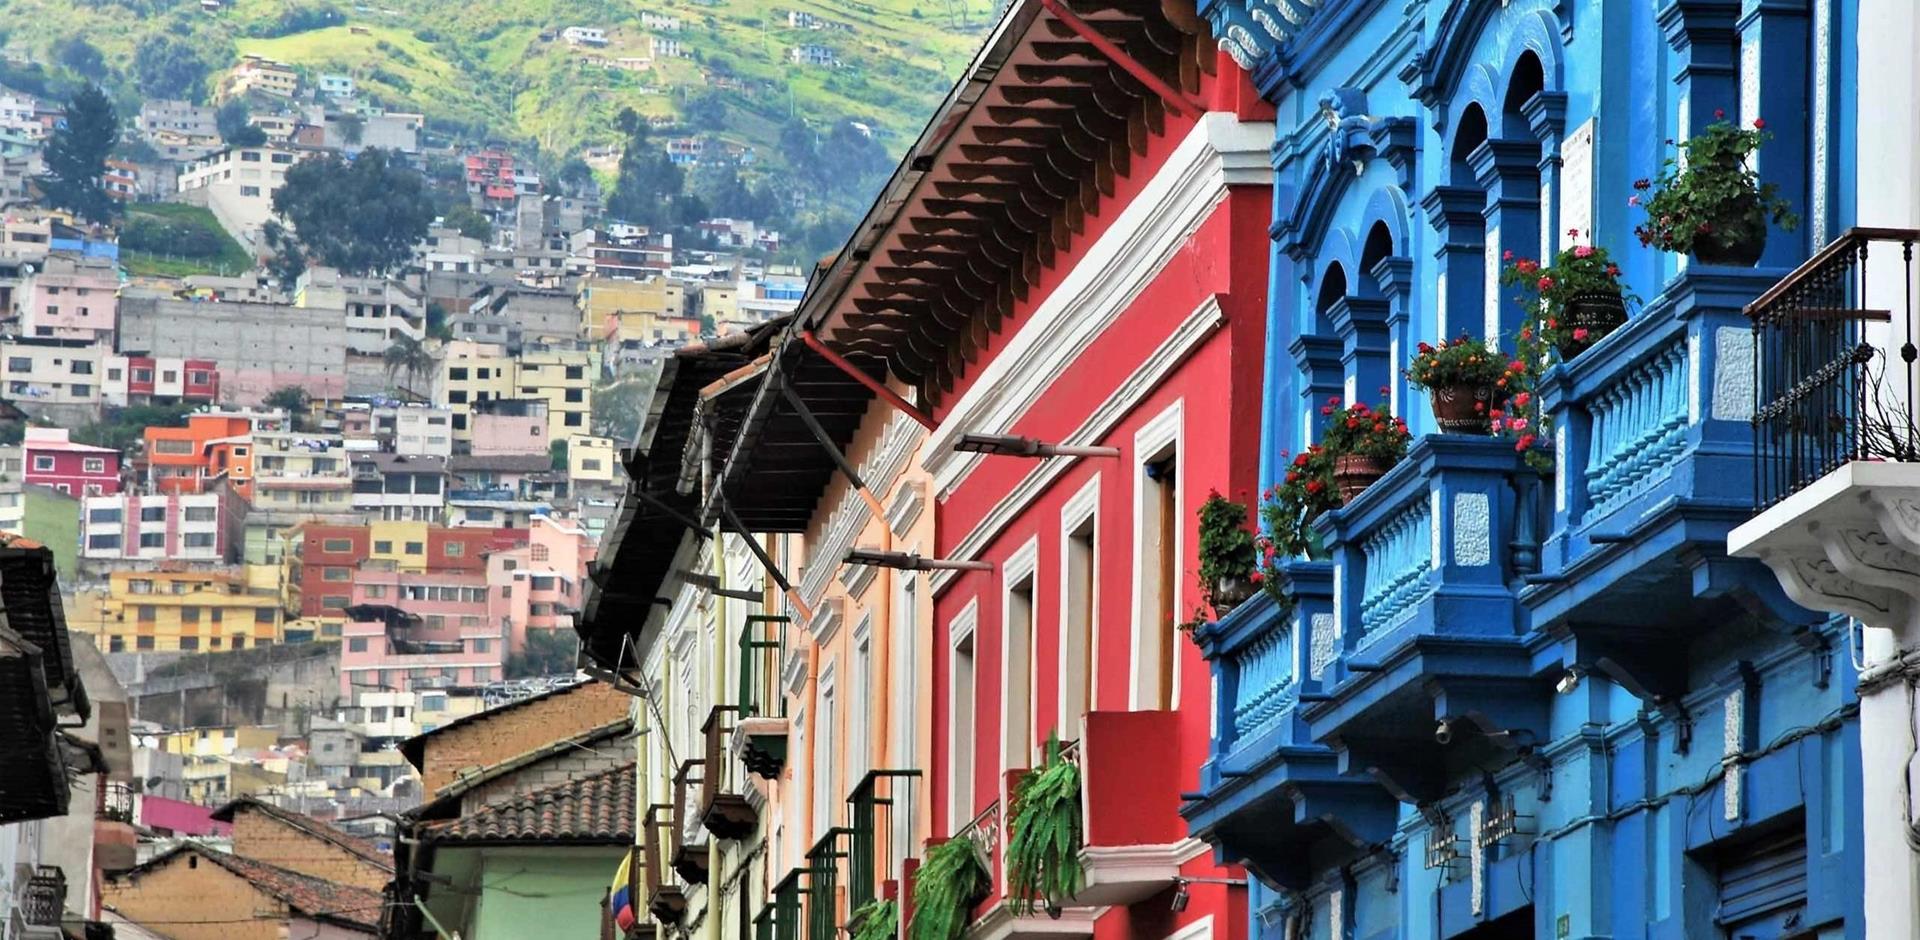 A&K itinerary: A 360-degree view of Quito, Ecuador